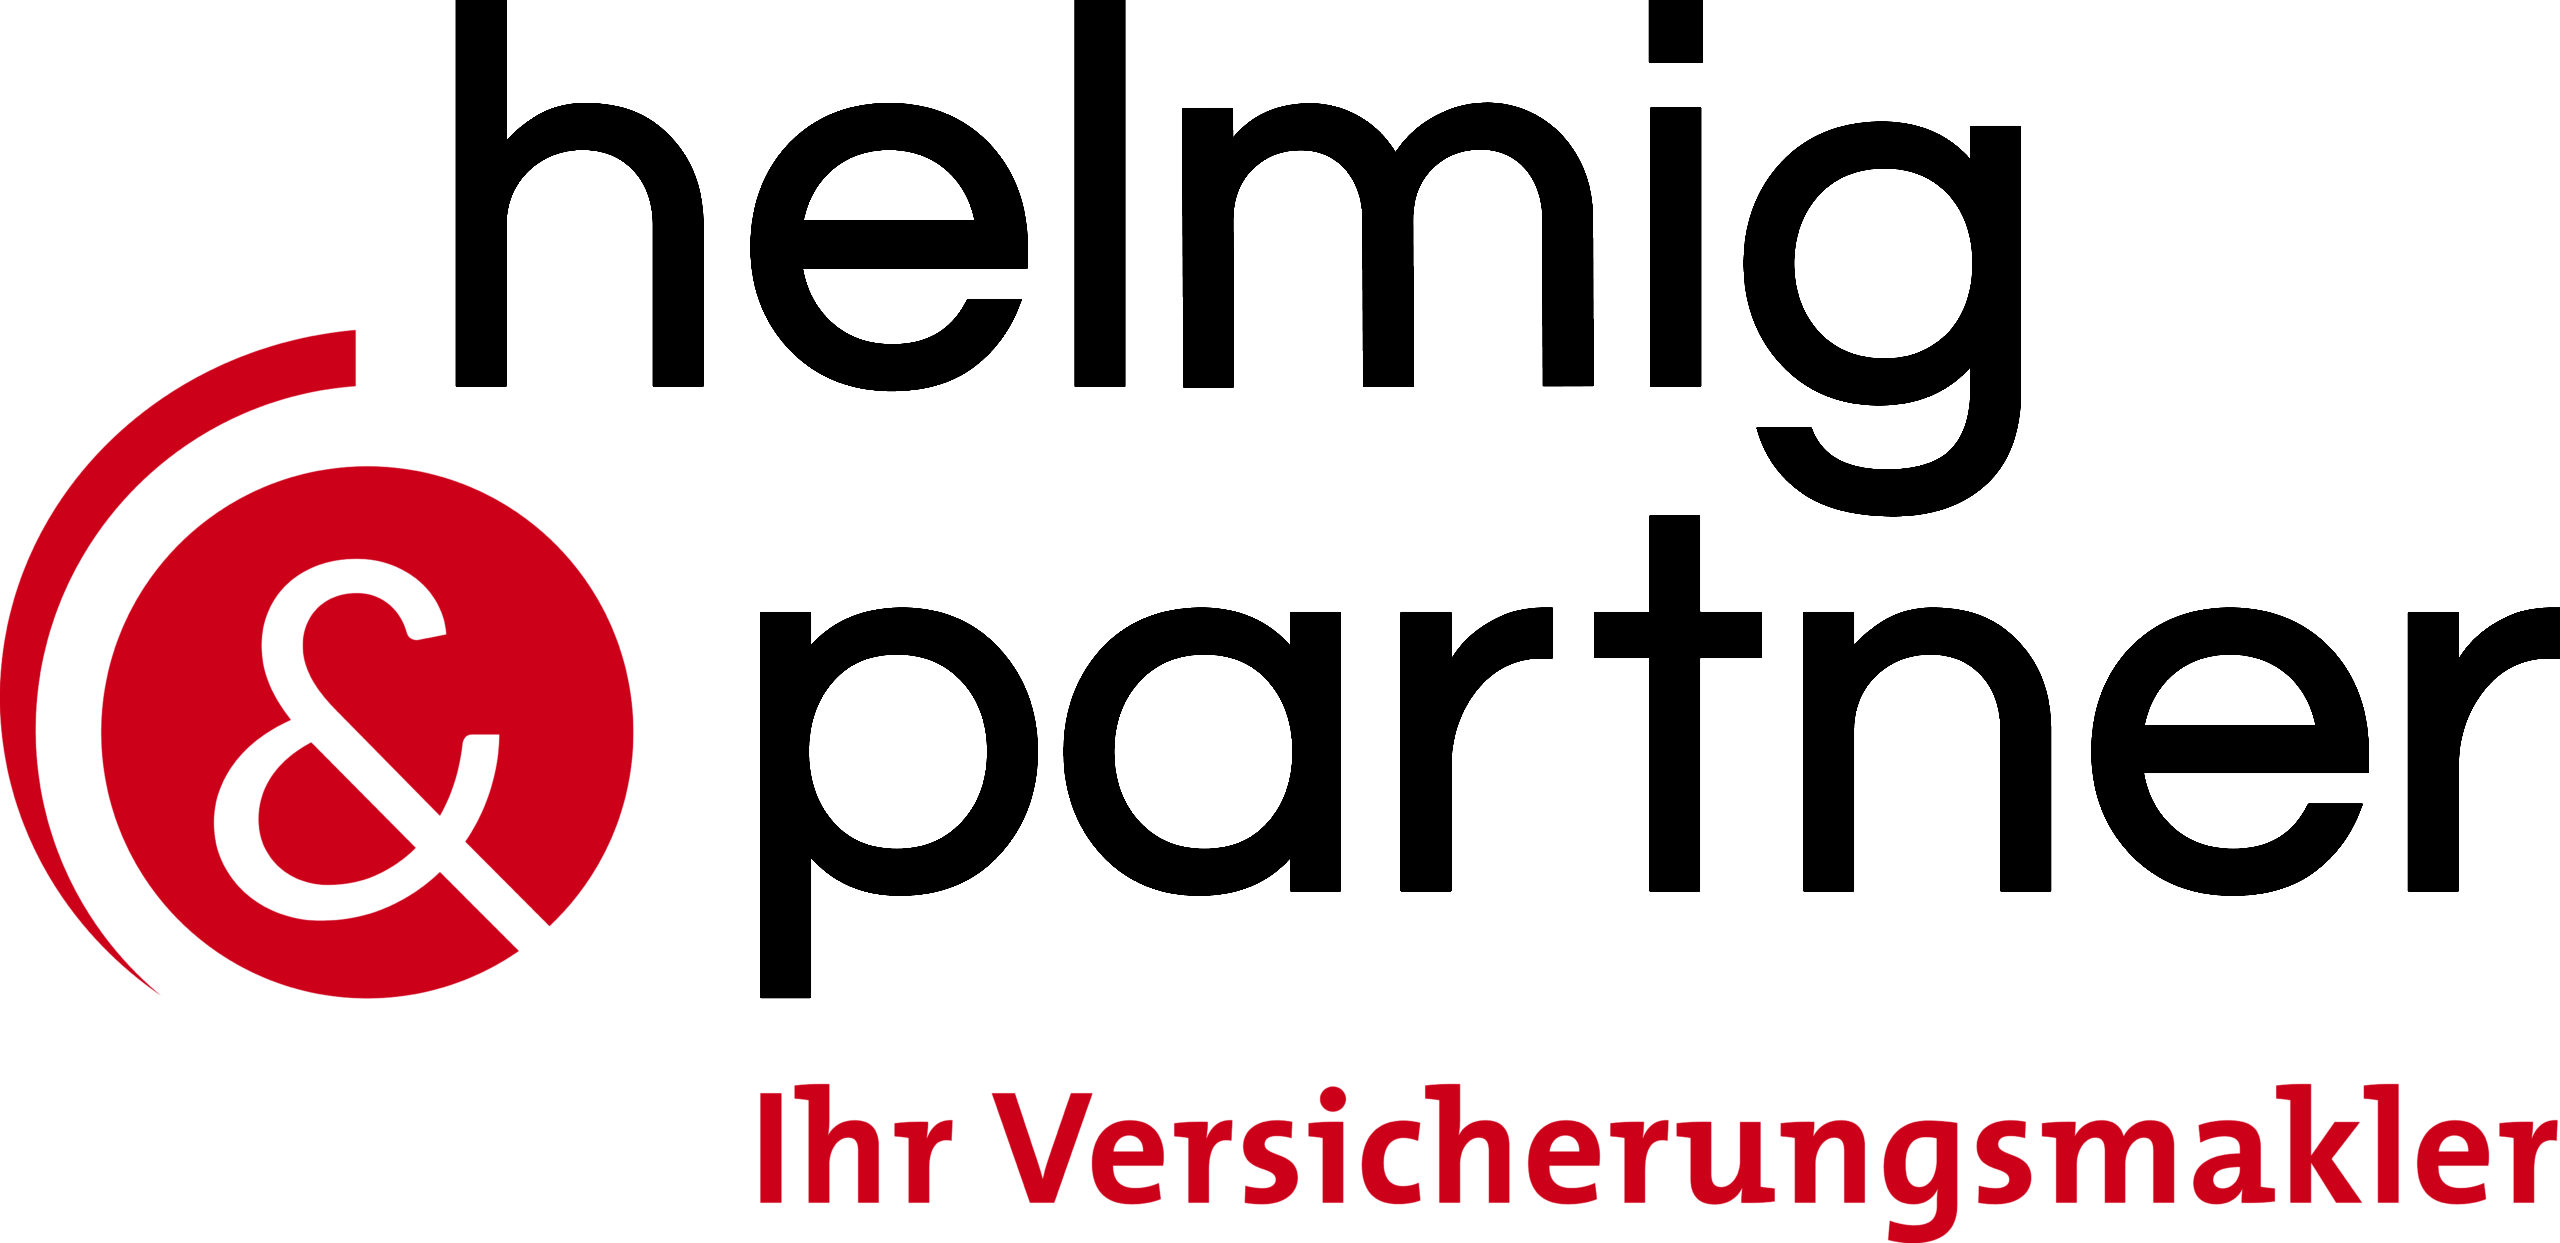 Helmig und Partner Logo cmyk